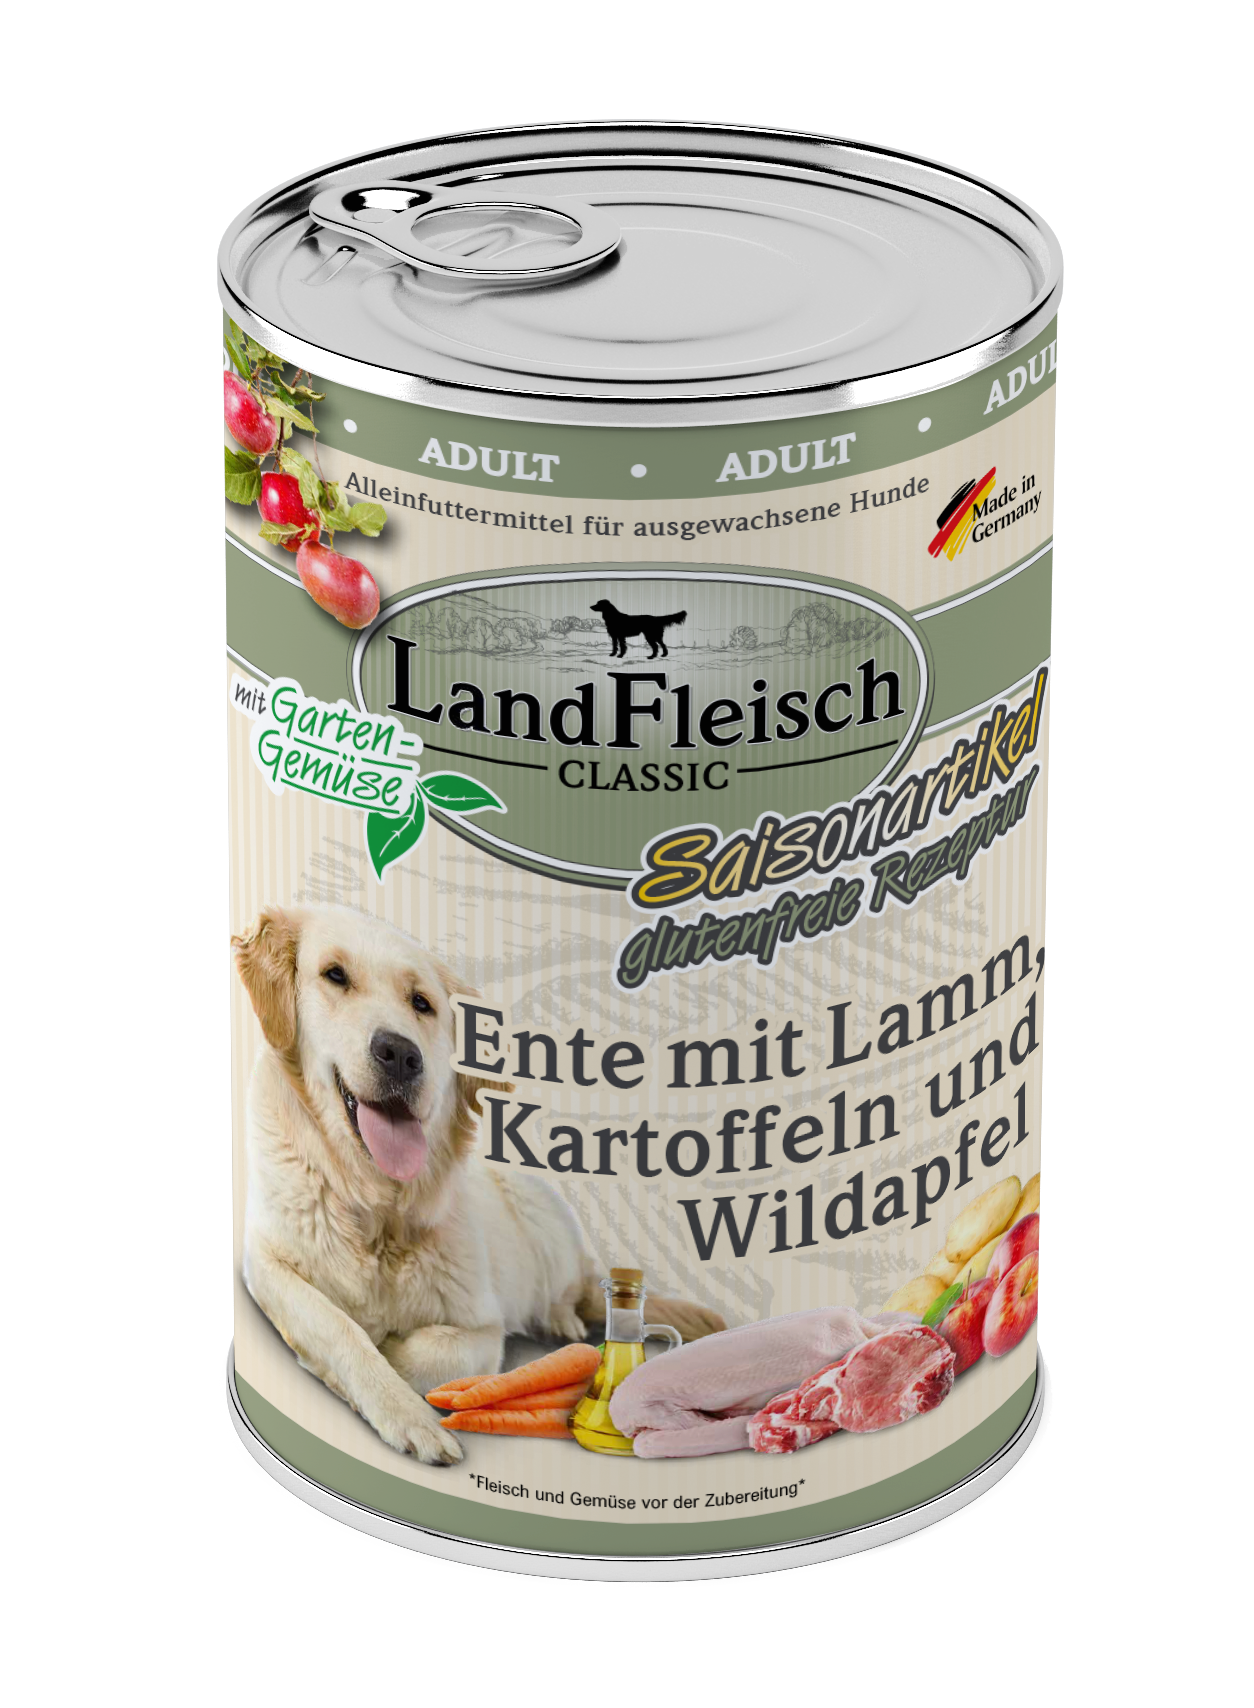 LandFleisch Dog Classic Ente mit Lamm, Kartoffeln Wildapfel und Gartengemüse 400g